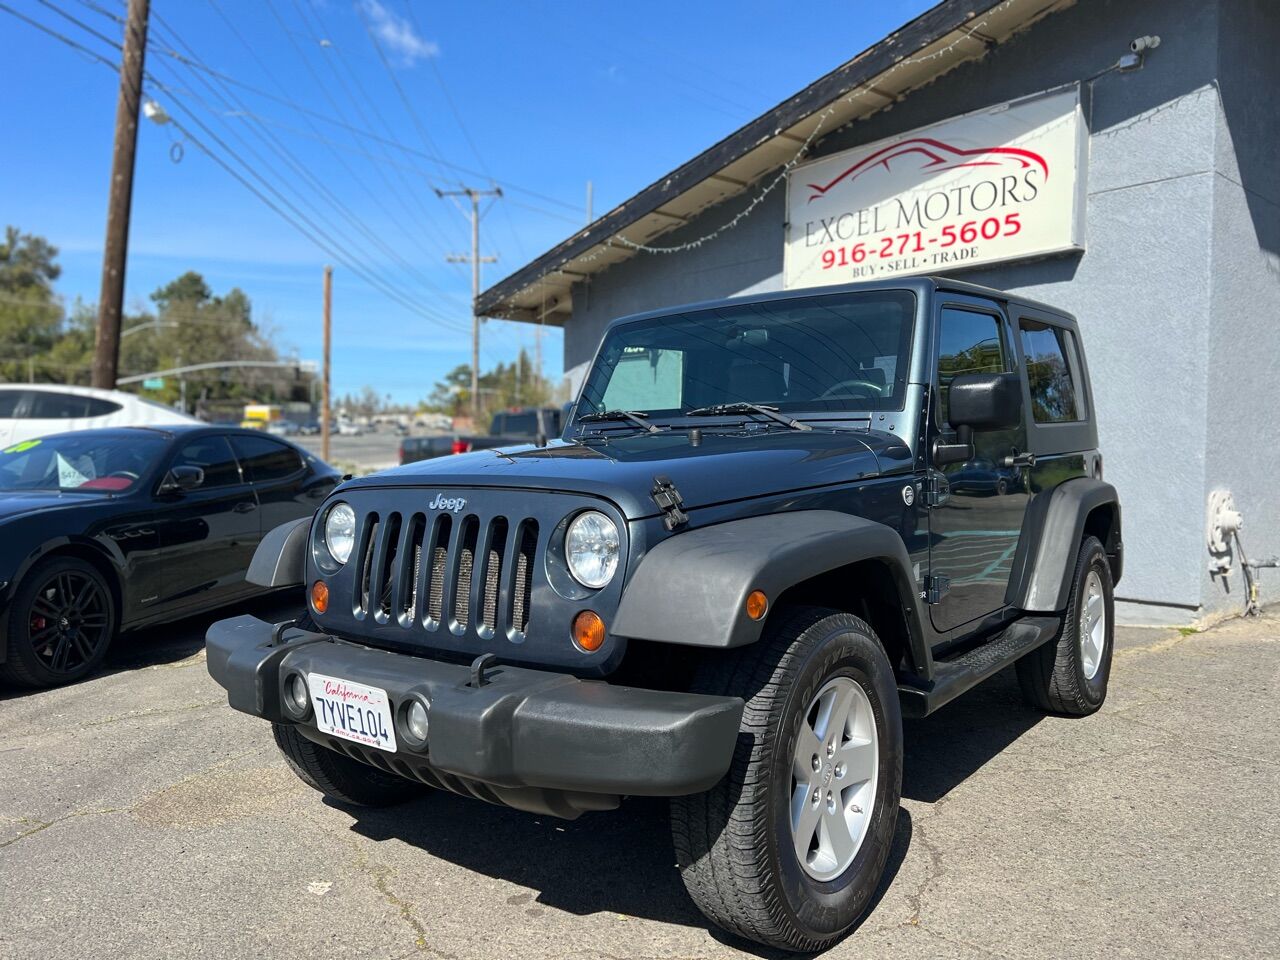 2008 Jeep Wrangler For Sale In California ®